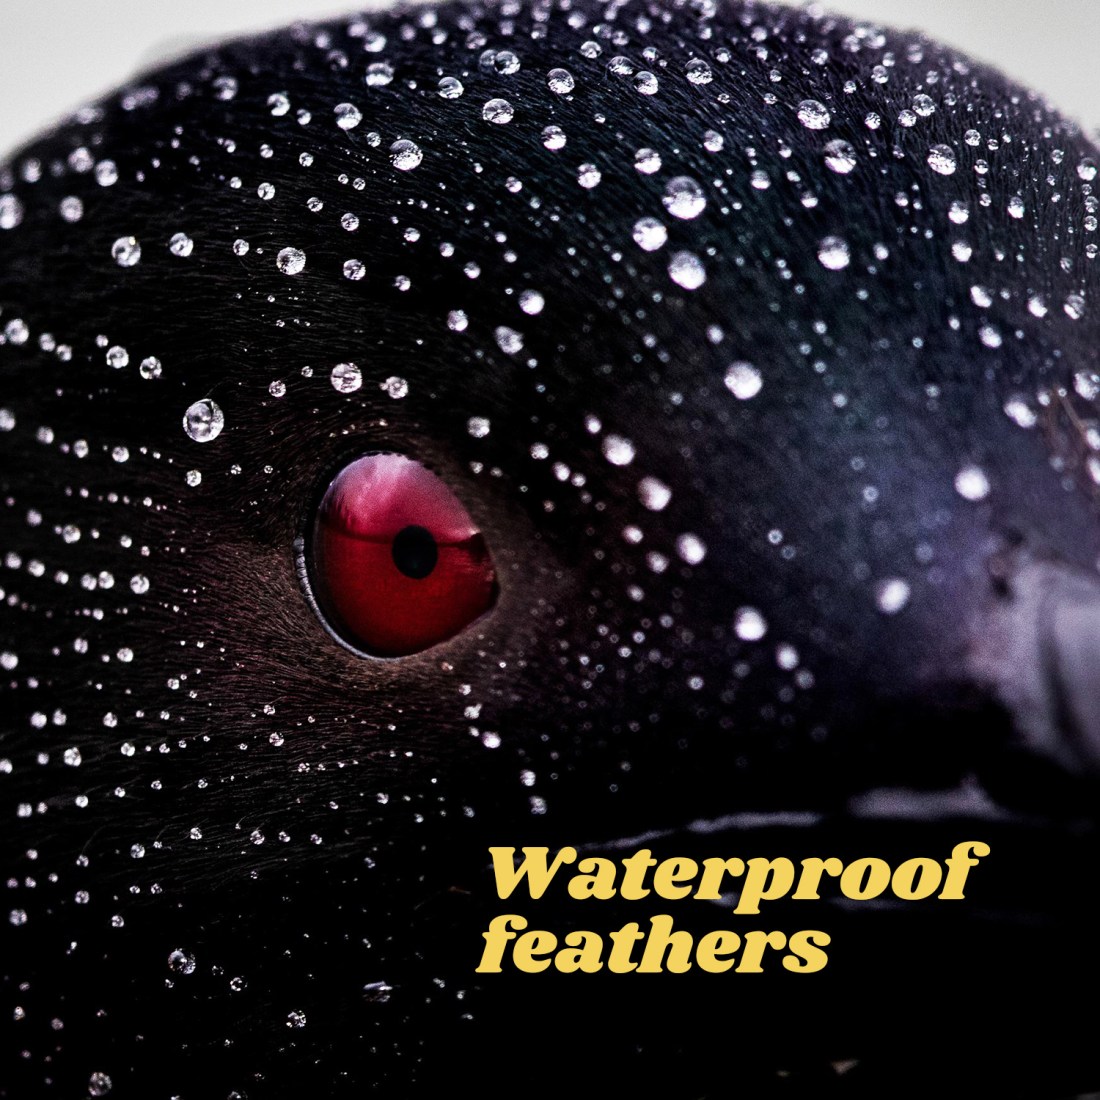 Waterproof feathers